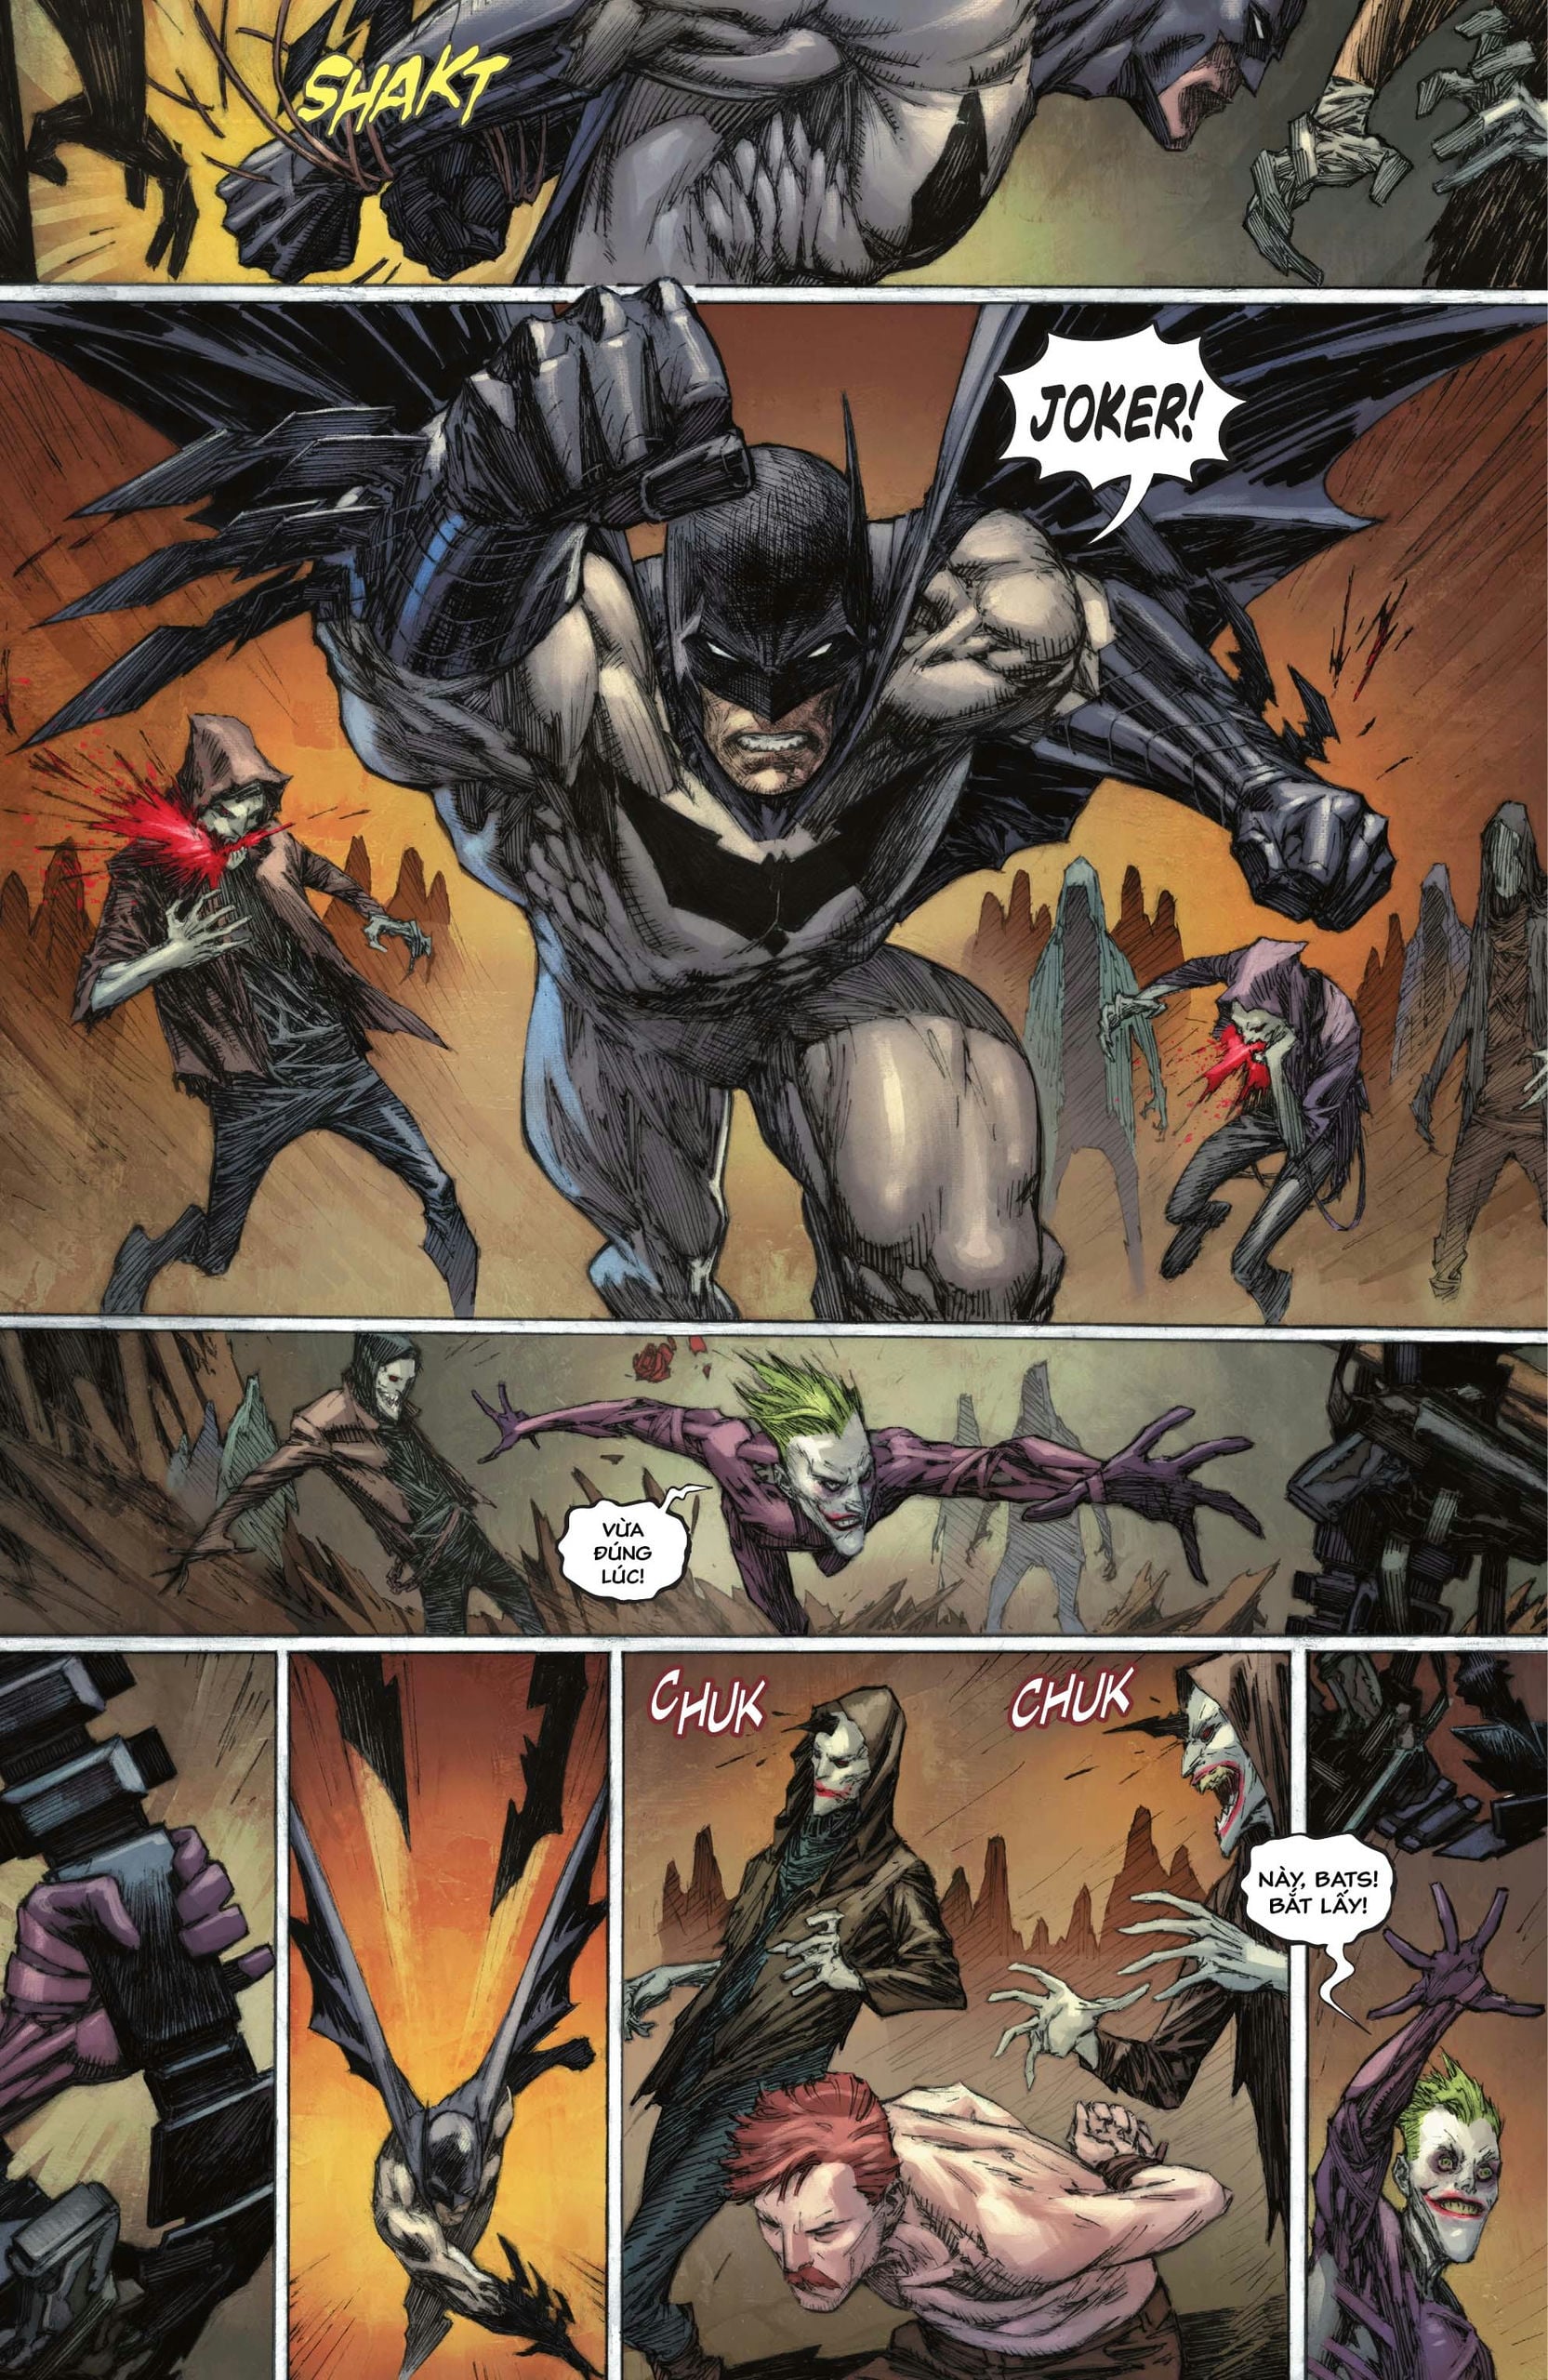 https://langgeek.net/wp-content/webpc-passthru.php?src=https://langgeek.net/wp-content/uploads/2023/05/Batman-_-The-Joker-The-Deadly-Duo-2022-006-011.jpg&nocache=1